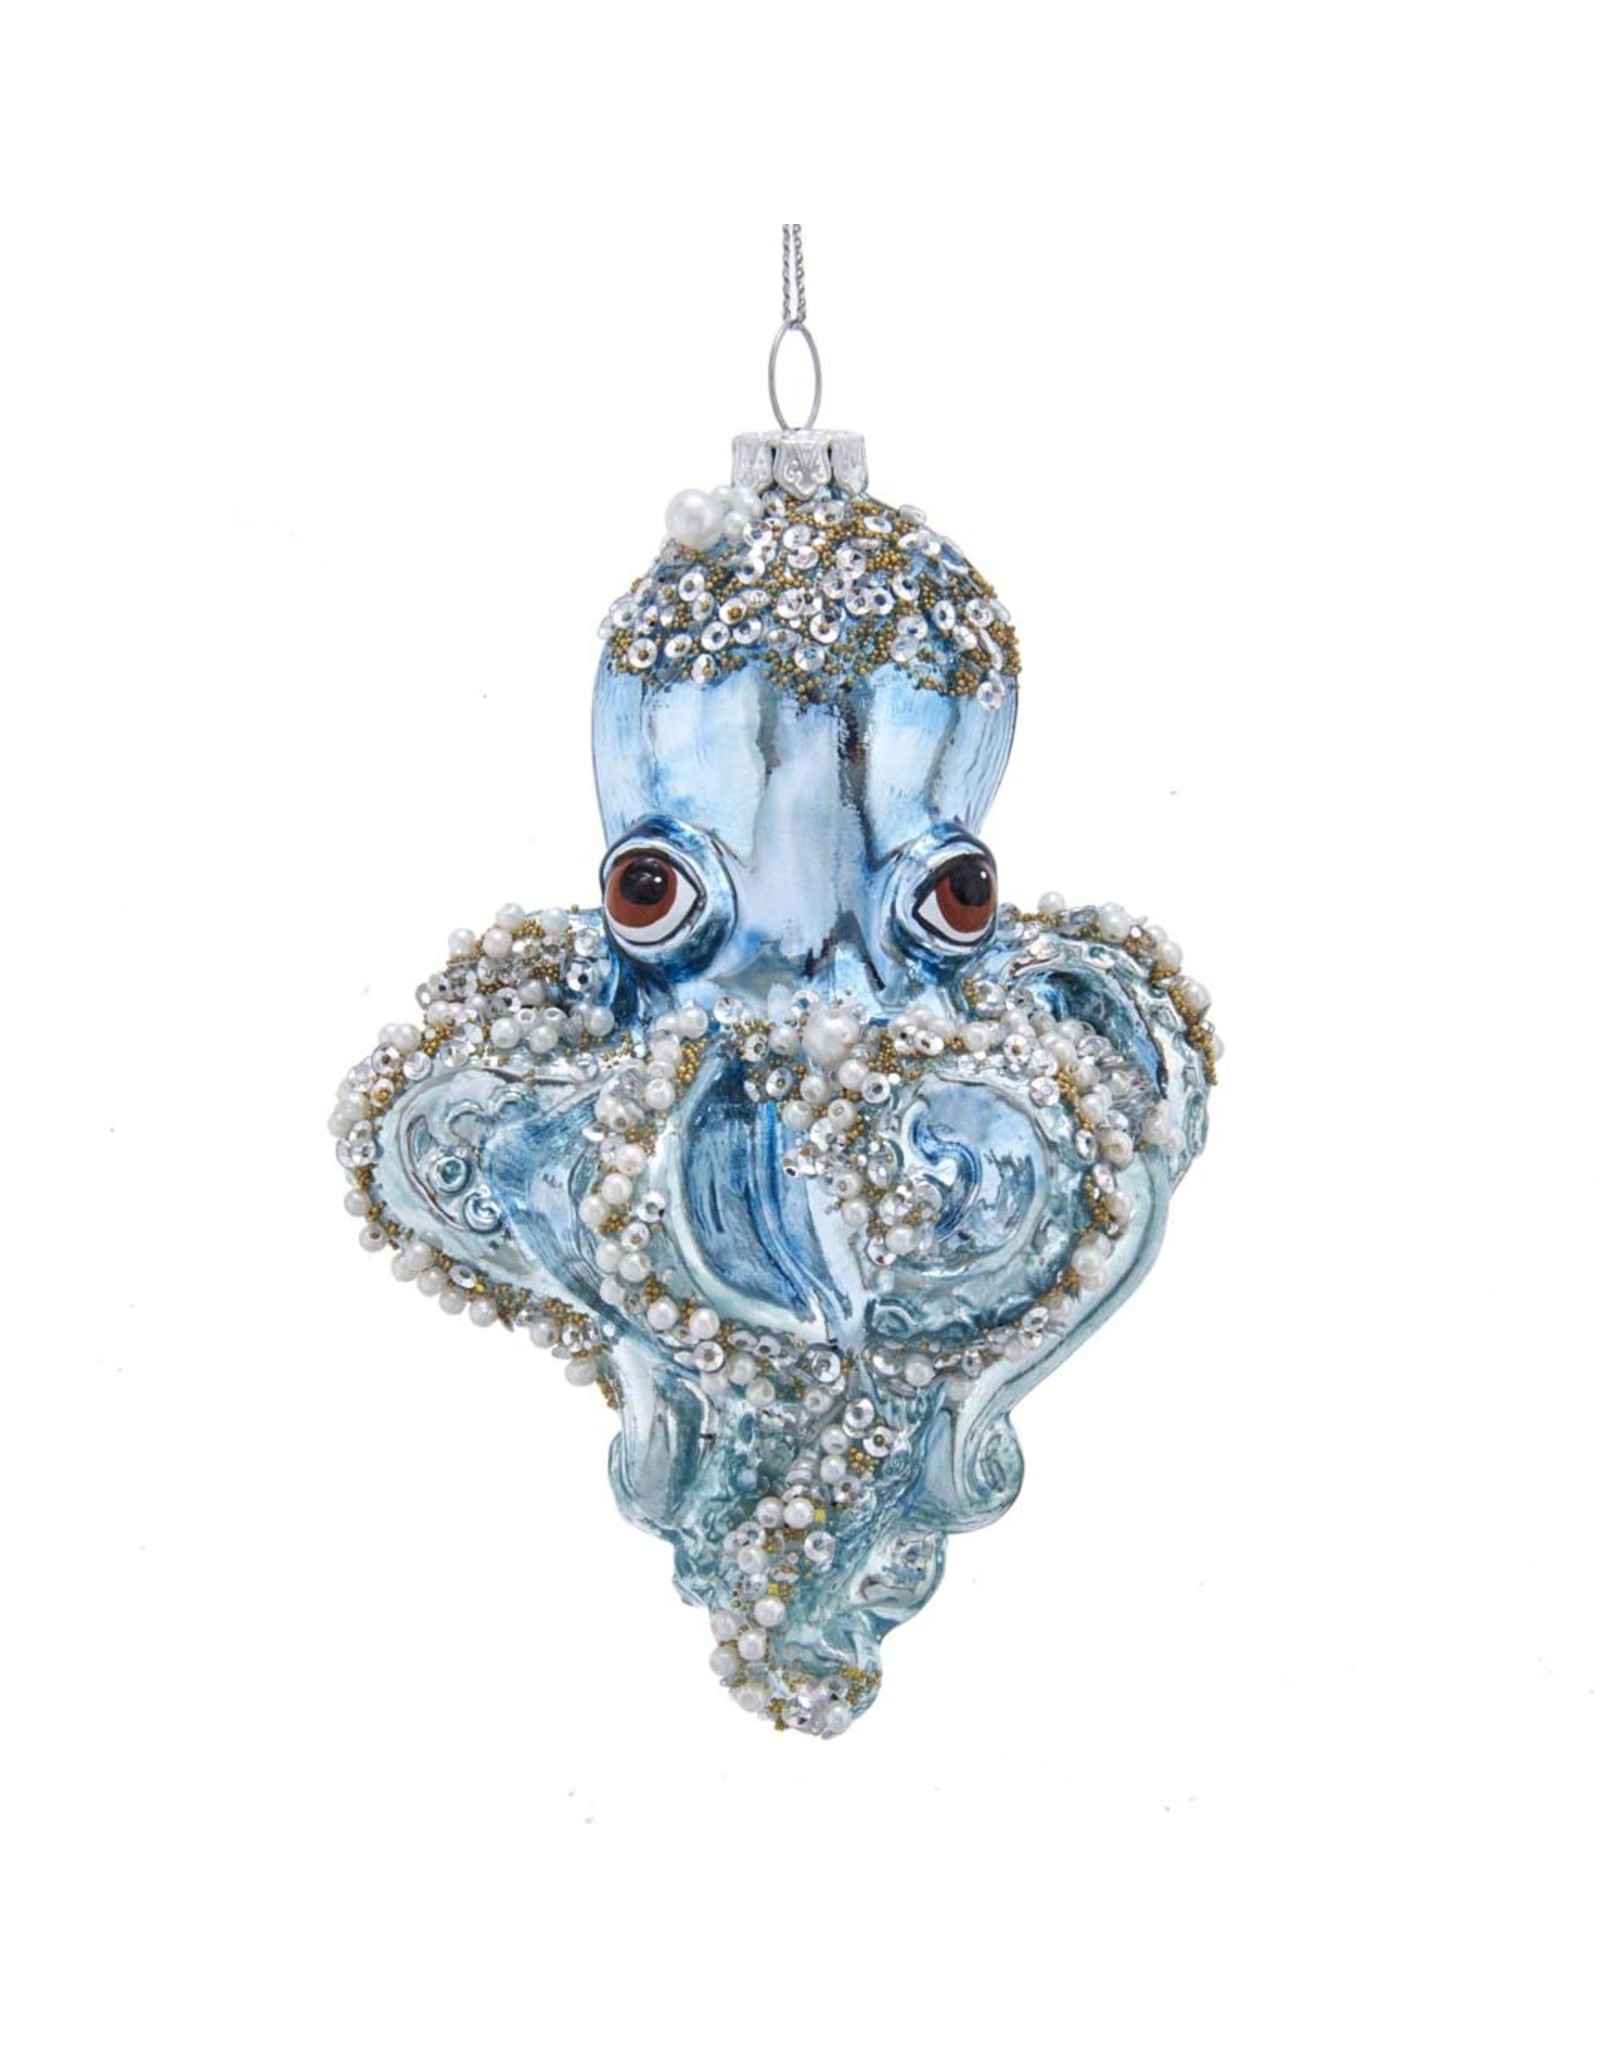 Kurt Adler Glass Blue Octopus With Beads Ornament